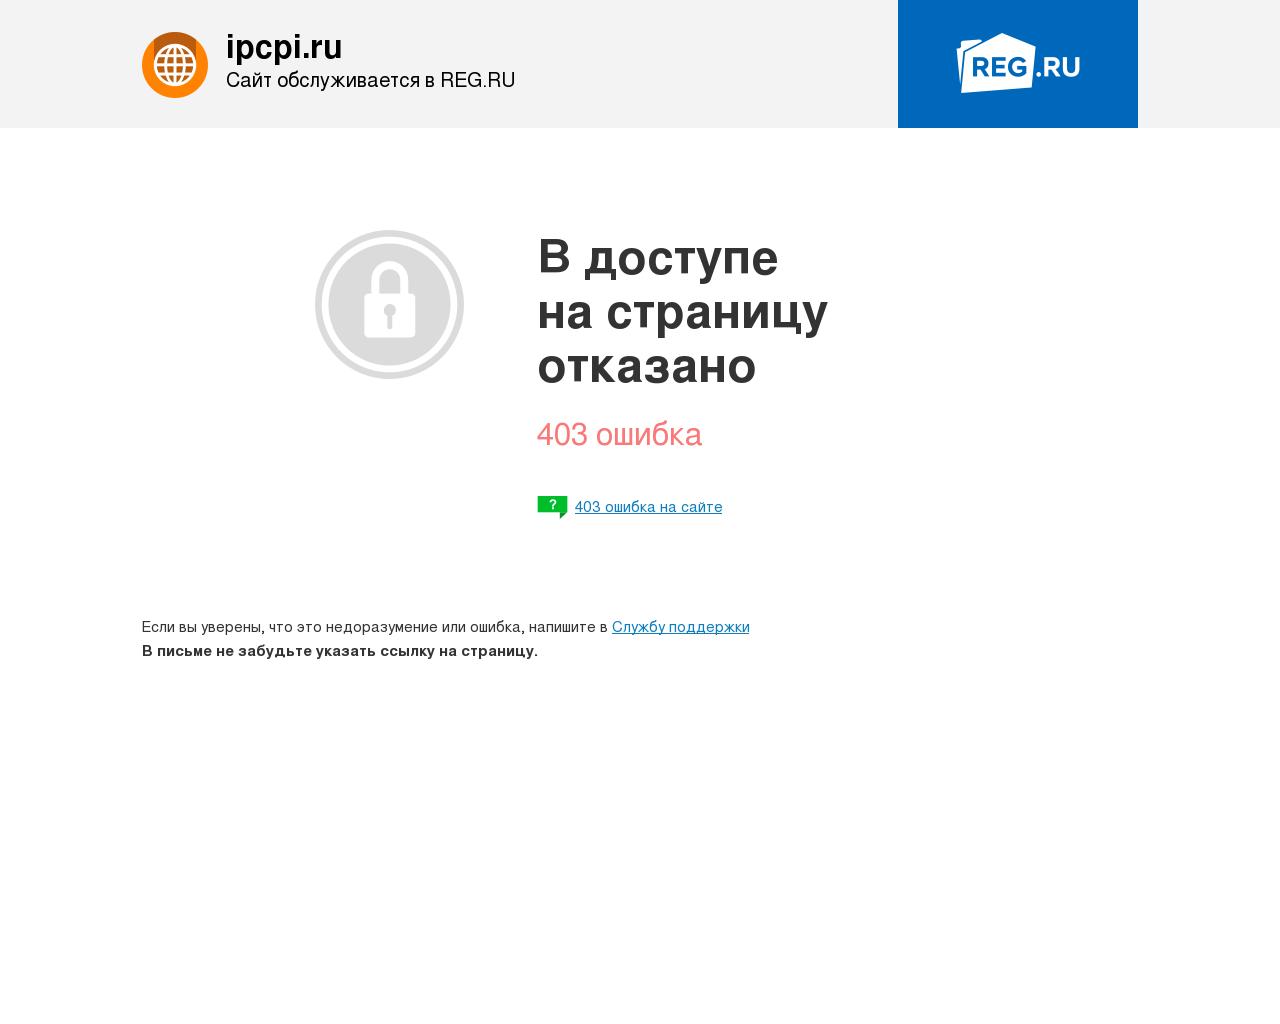 Изображение сайта ipcpi.ru в разрешении 1280x1024